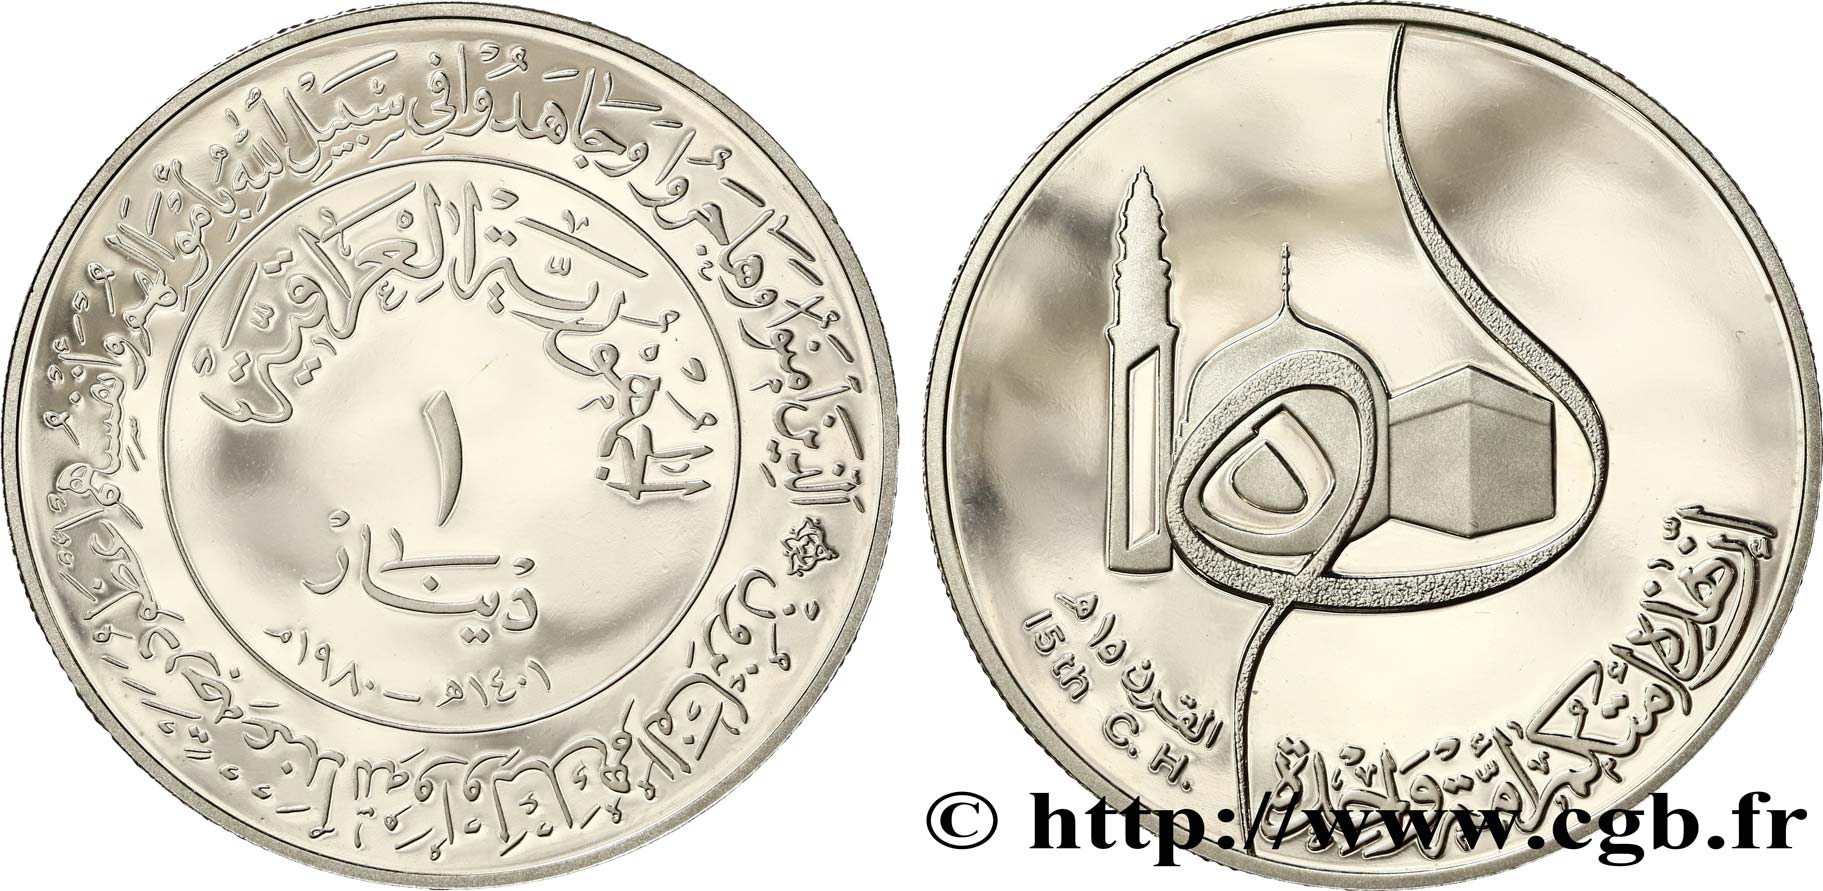 IRAQ 1 Dinar 15e siècle de l’Hégire 1980  MS 